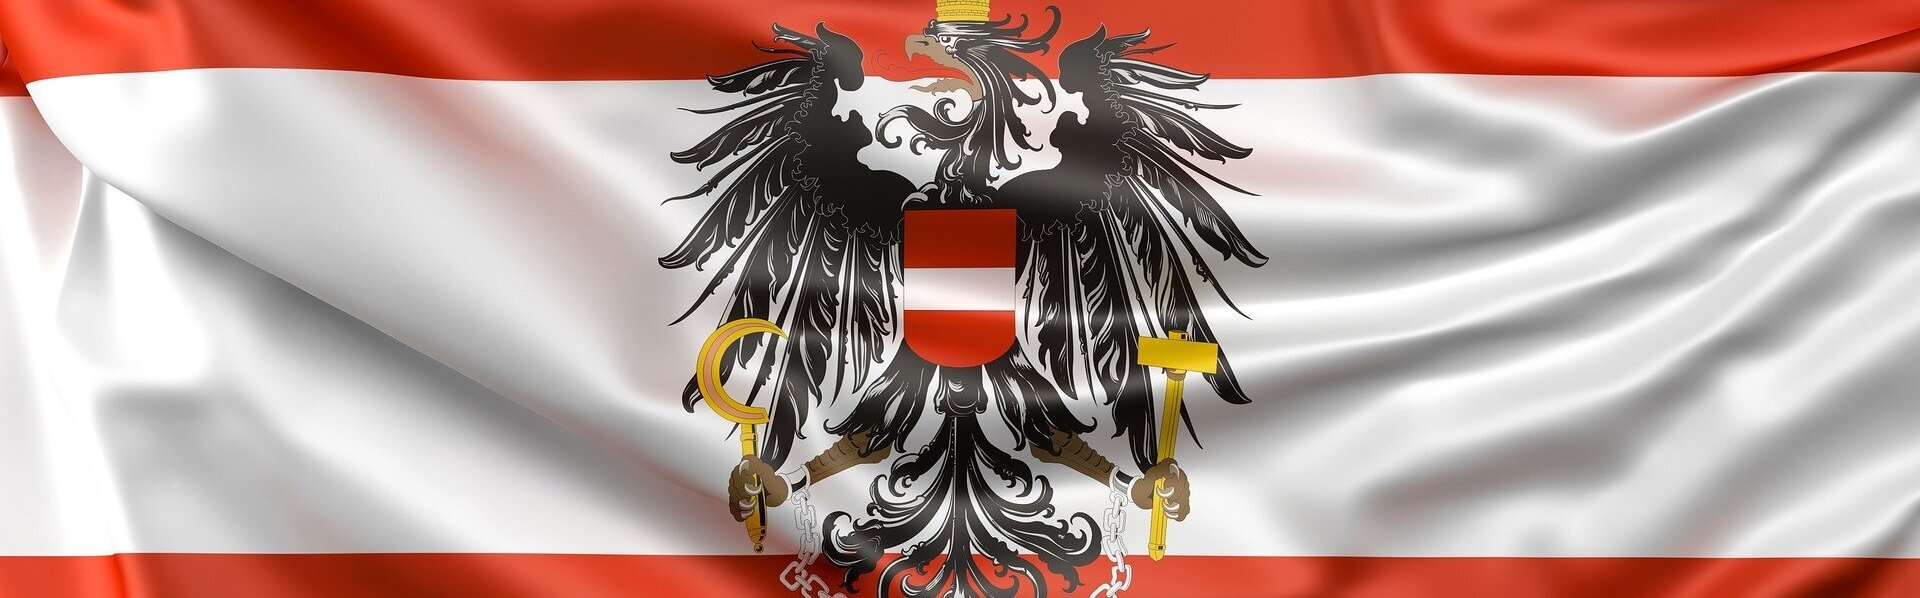 Das Bild zeigt die Flagge Österreichs